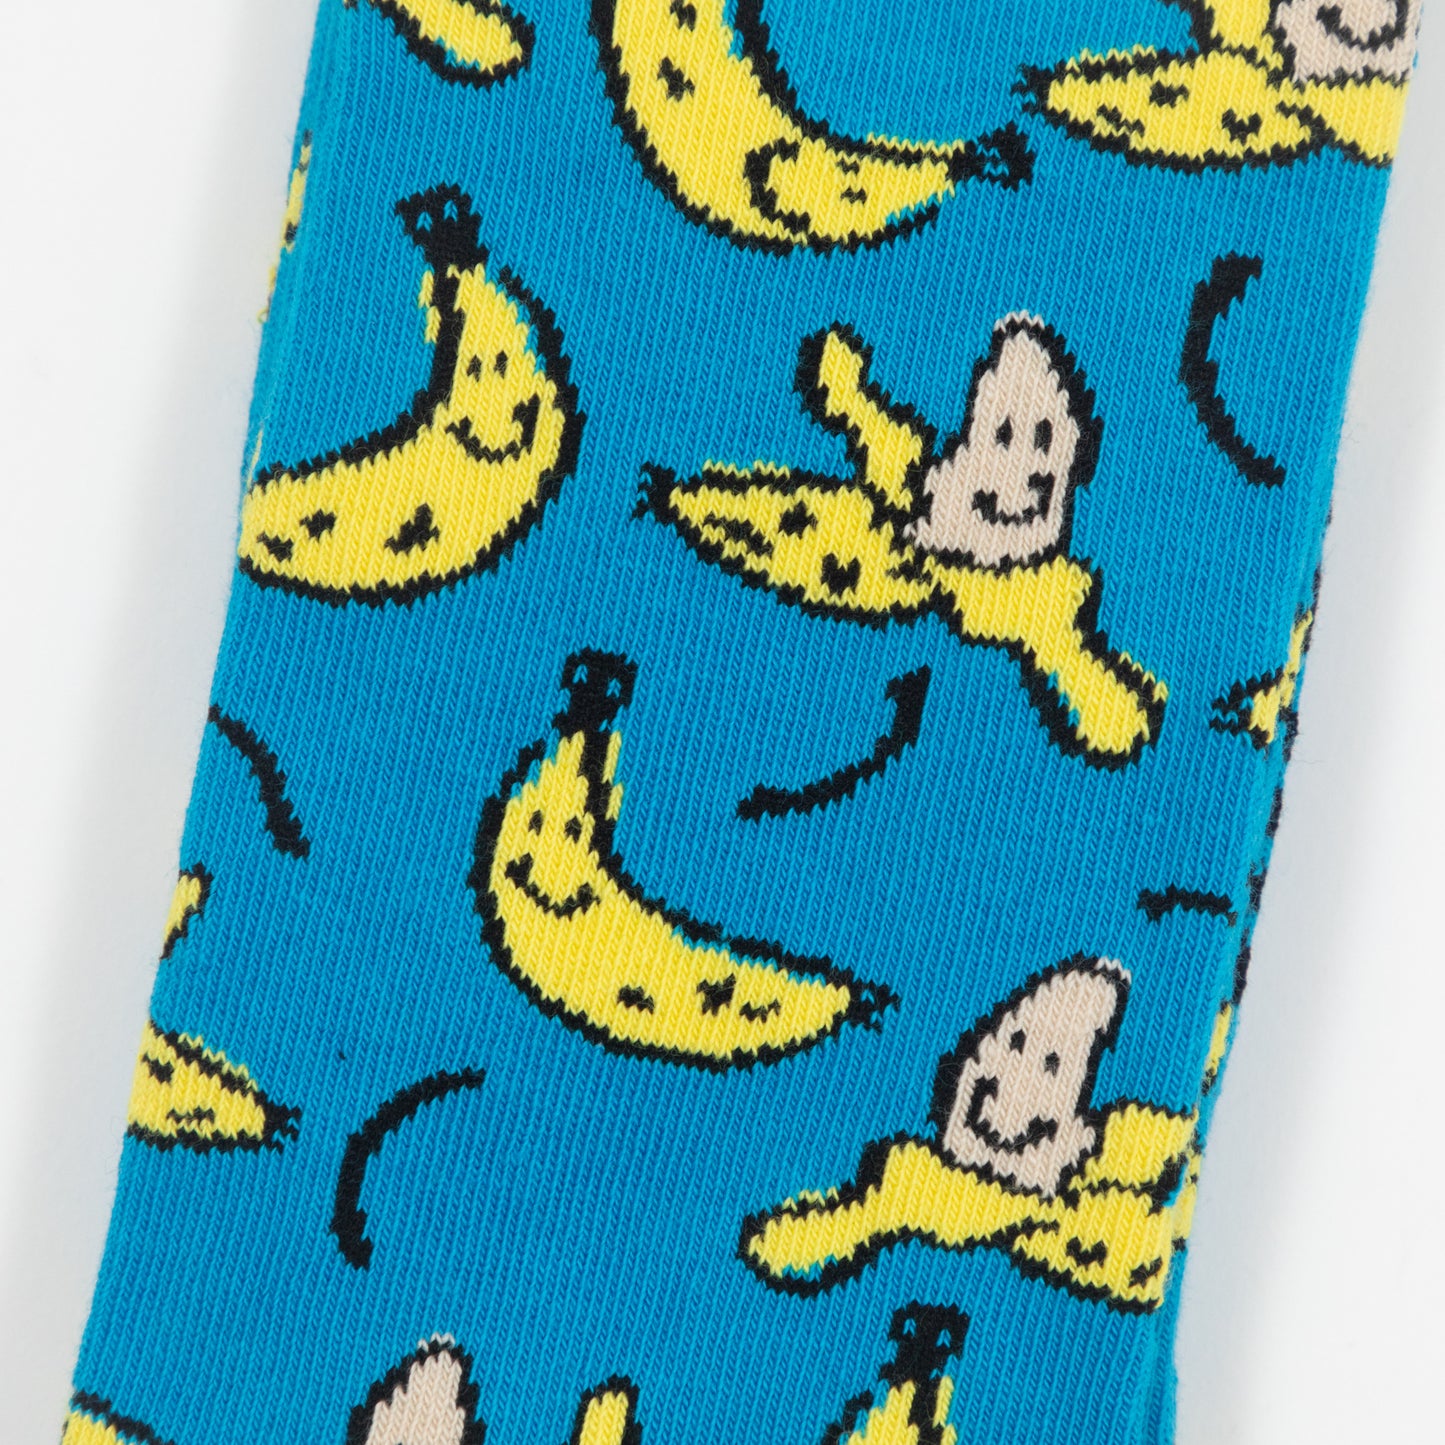 HAPPY SOCKS Banana Socks in BLUE